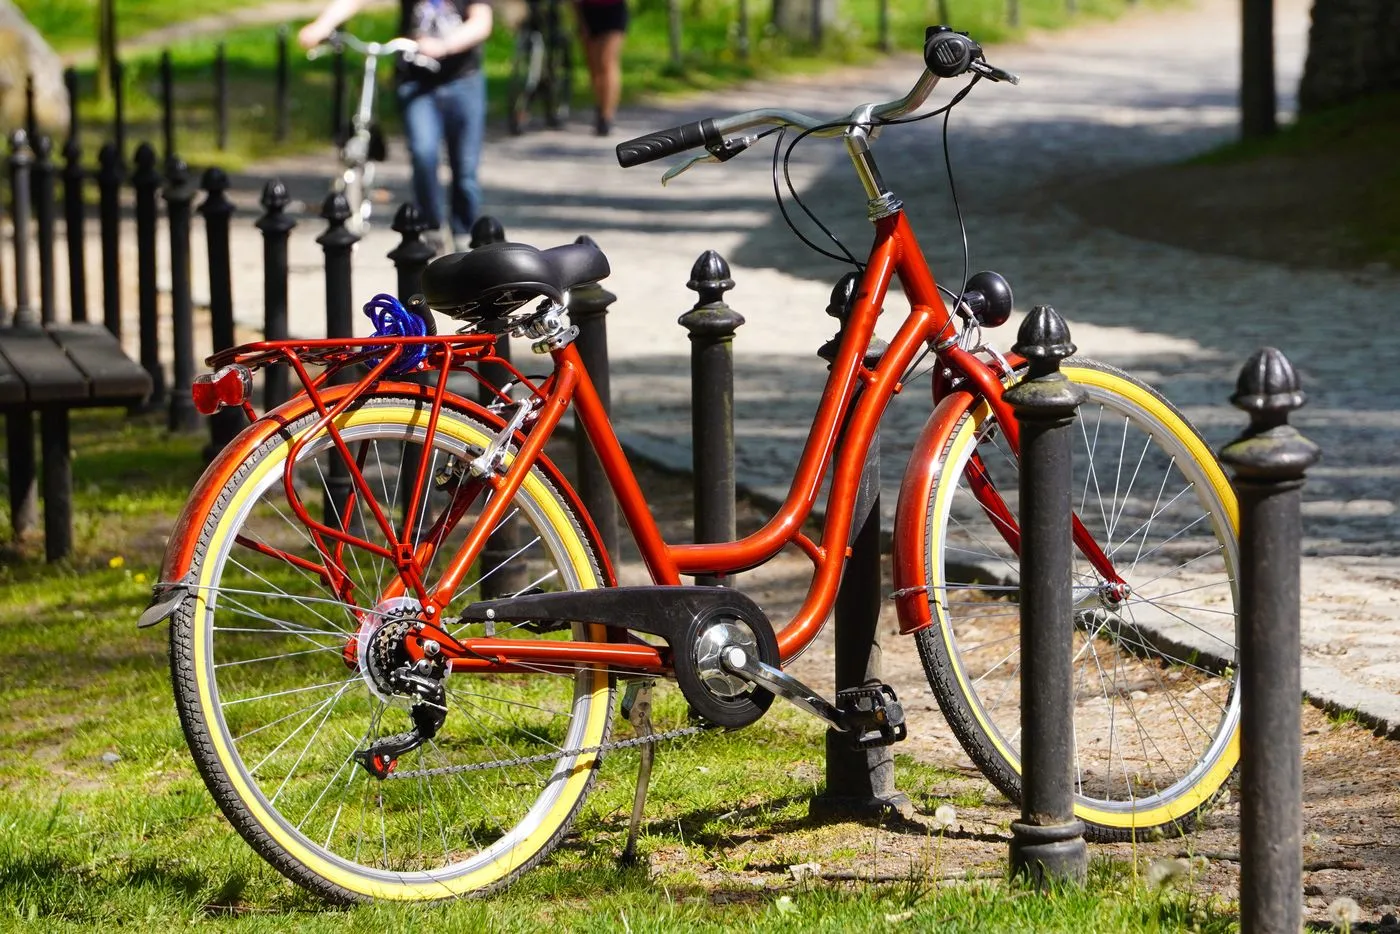 åbenbaring Lige sortere Nyhed: Pas på cykeltyven - 5 gode råd - Gartnernes Forsikring GS